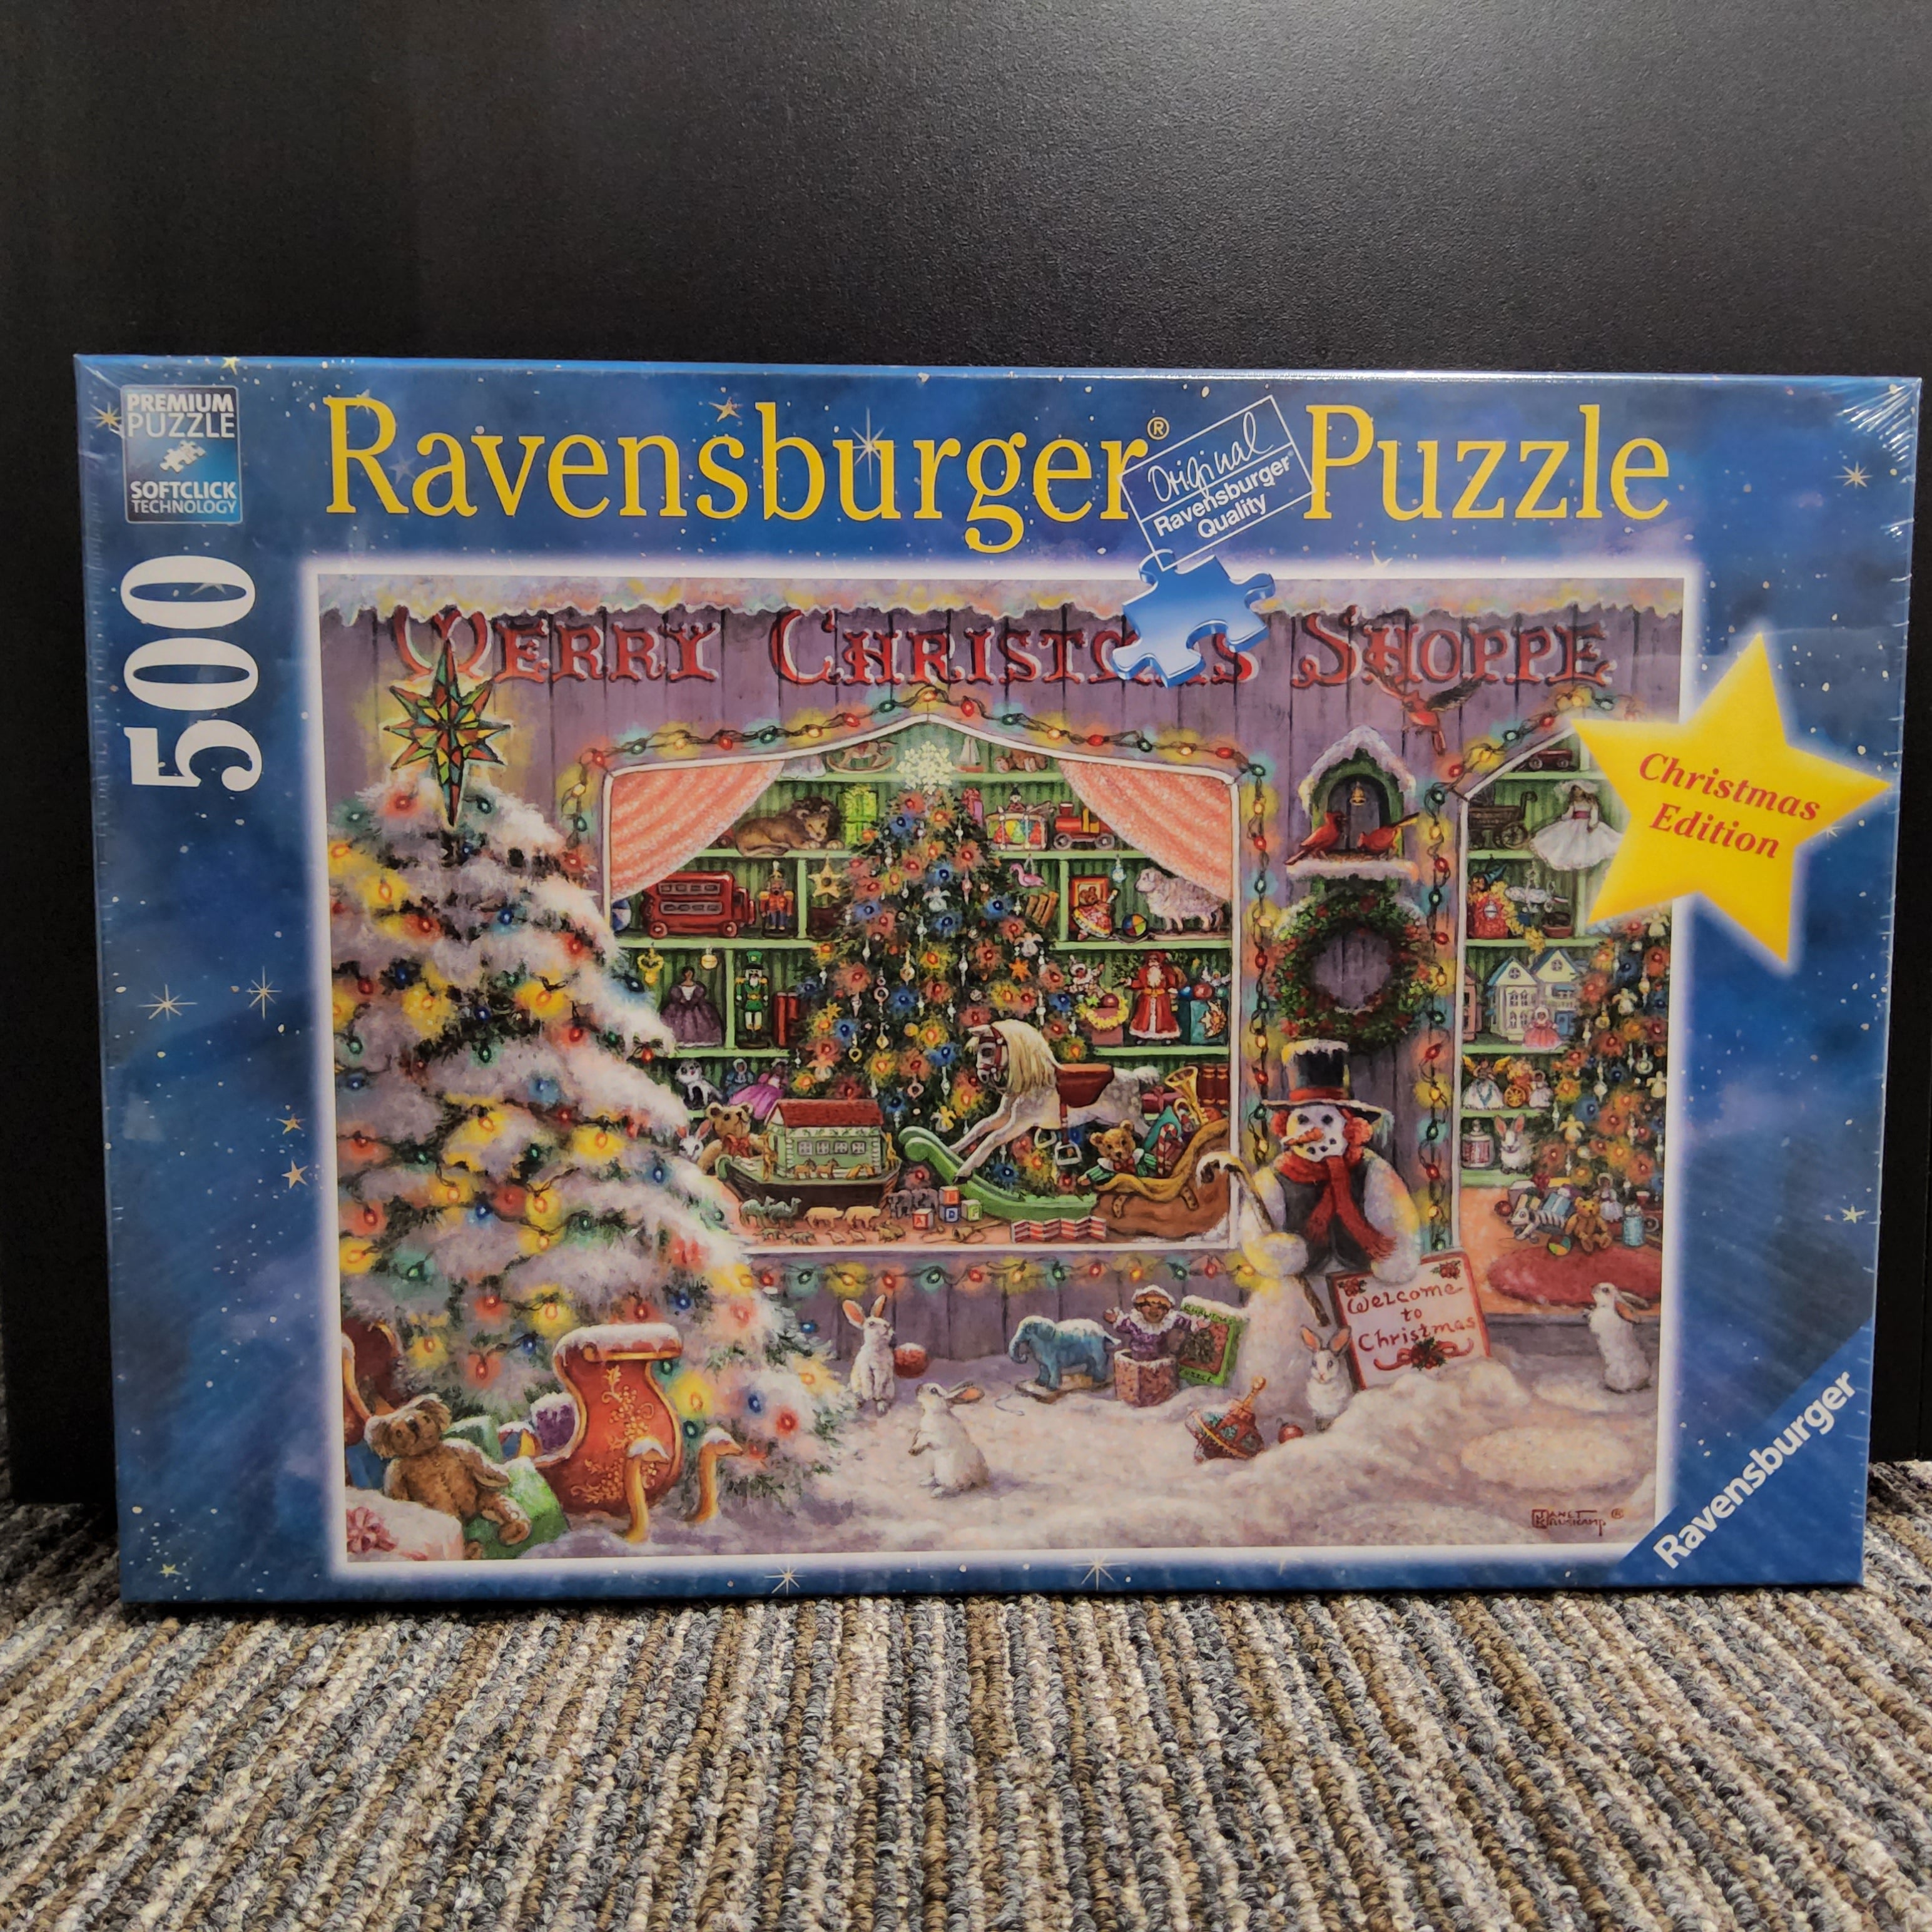 Ravensburger Puzzle - The Christmas Shop - 500 pieces - #16534